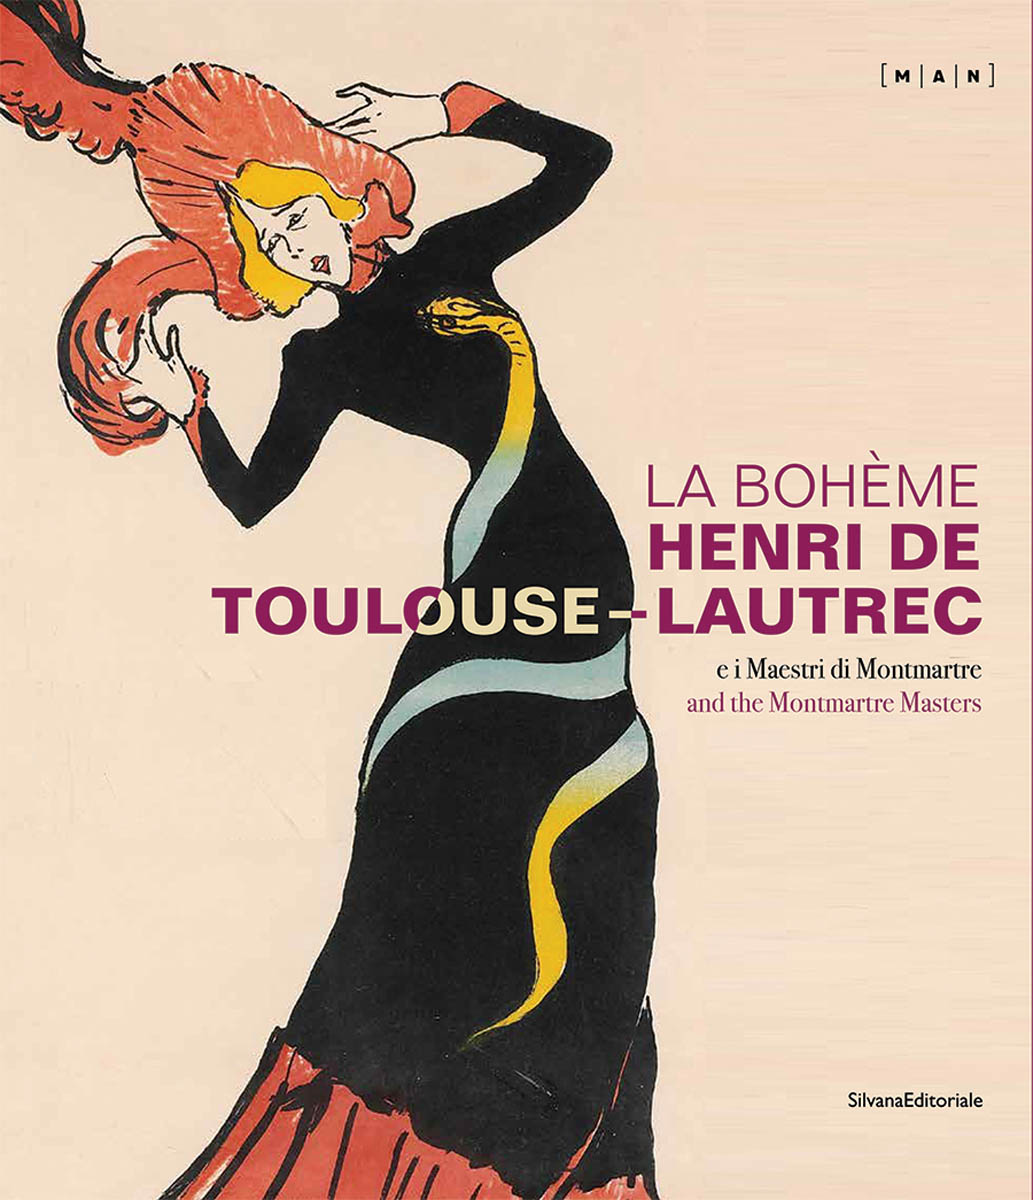 La Boheme: Henri de Toulouse-Lautrec and the Montmartre Masters cover